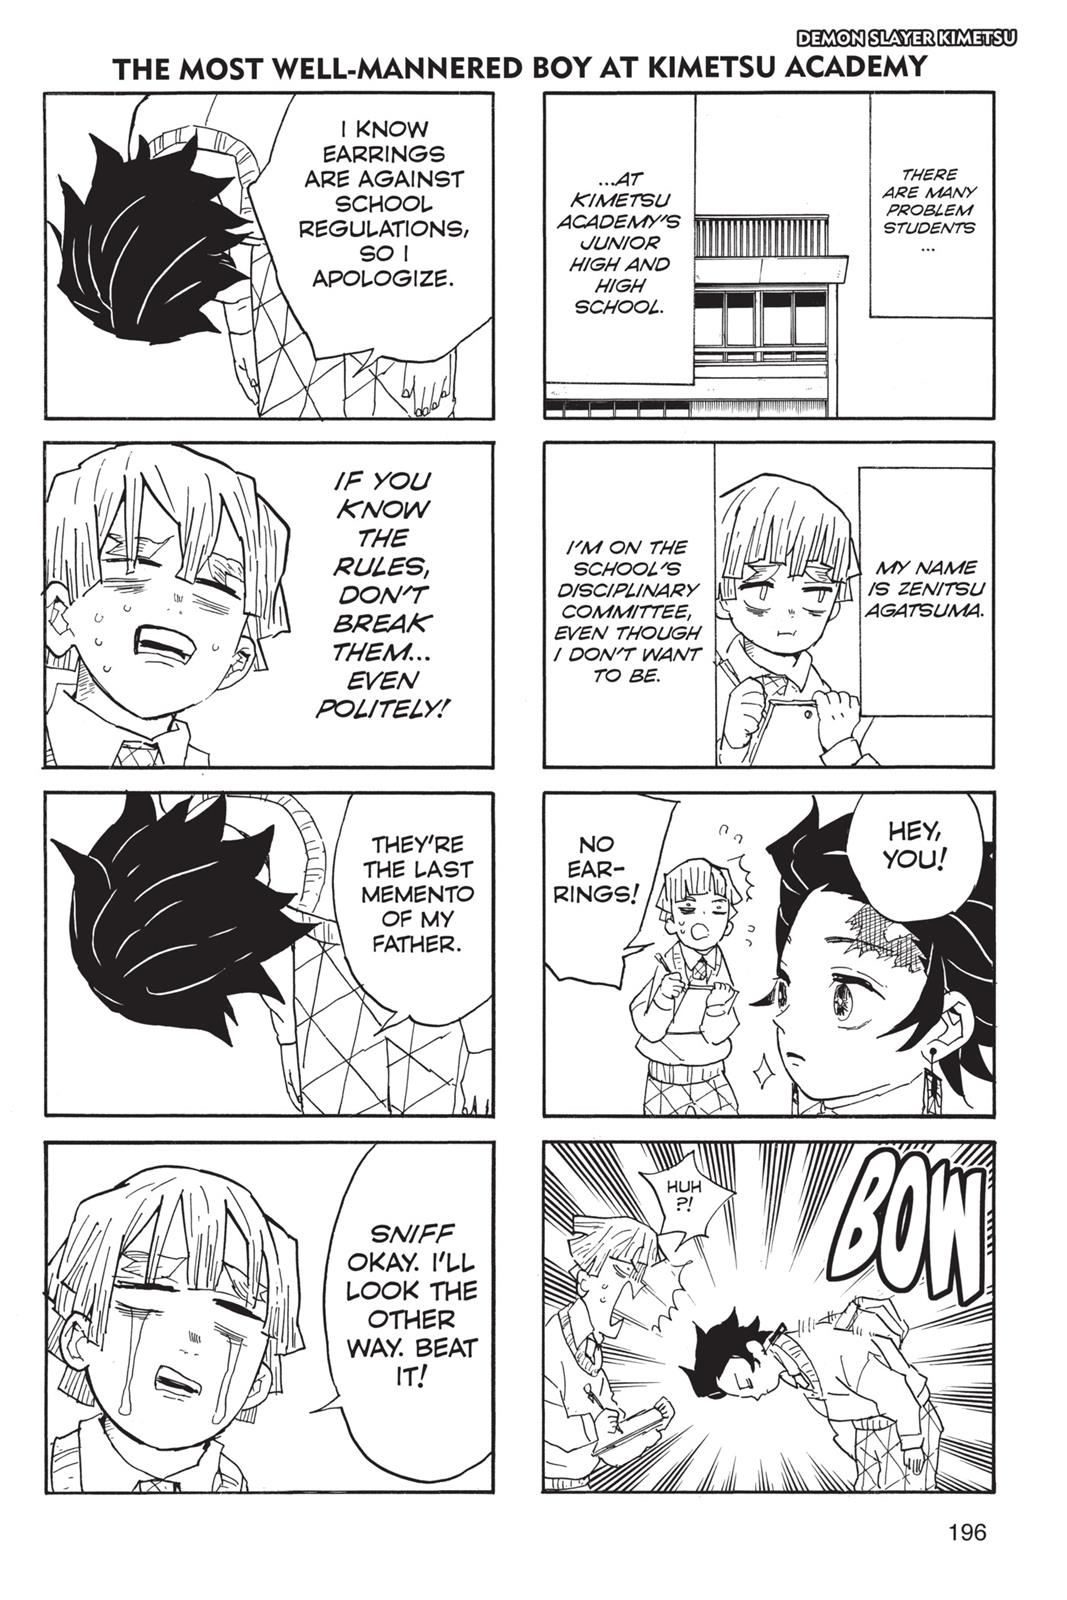 Demon Slayer Manga Manga Chapter - 52 - image 12